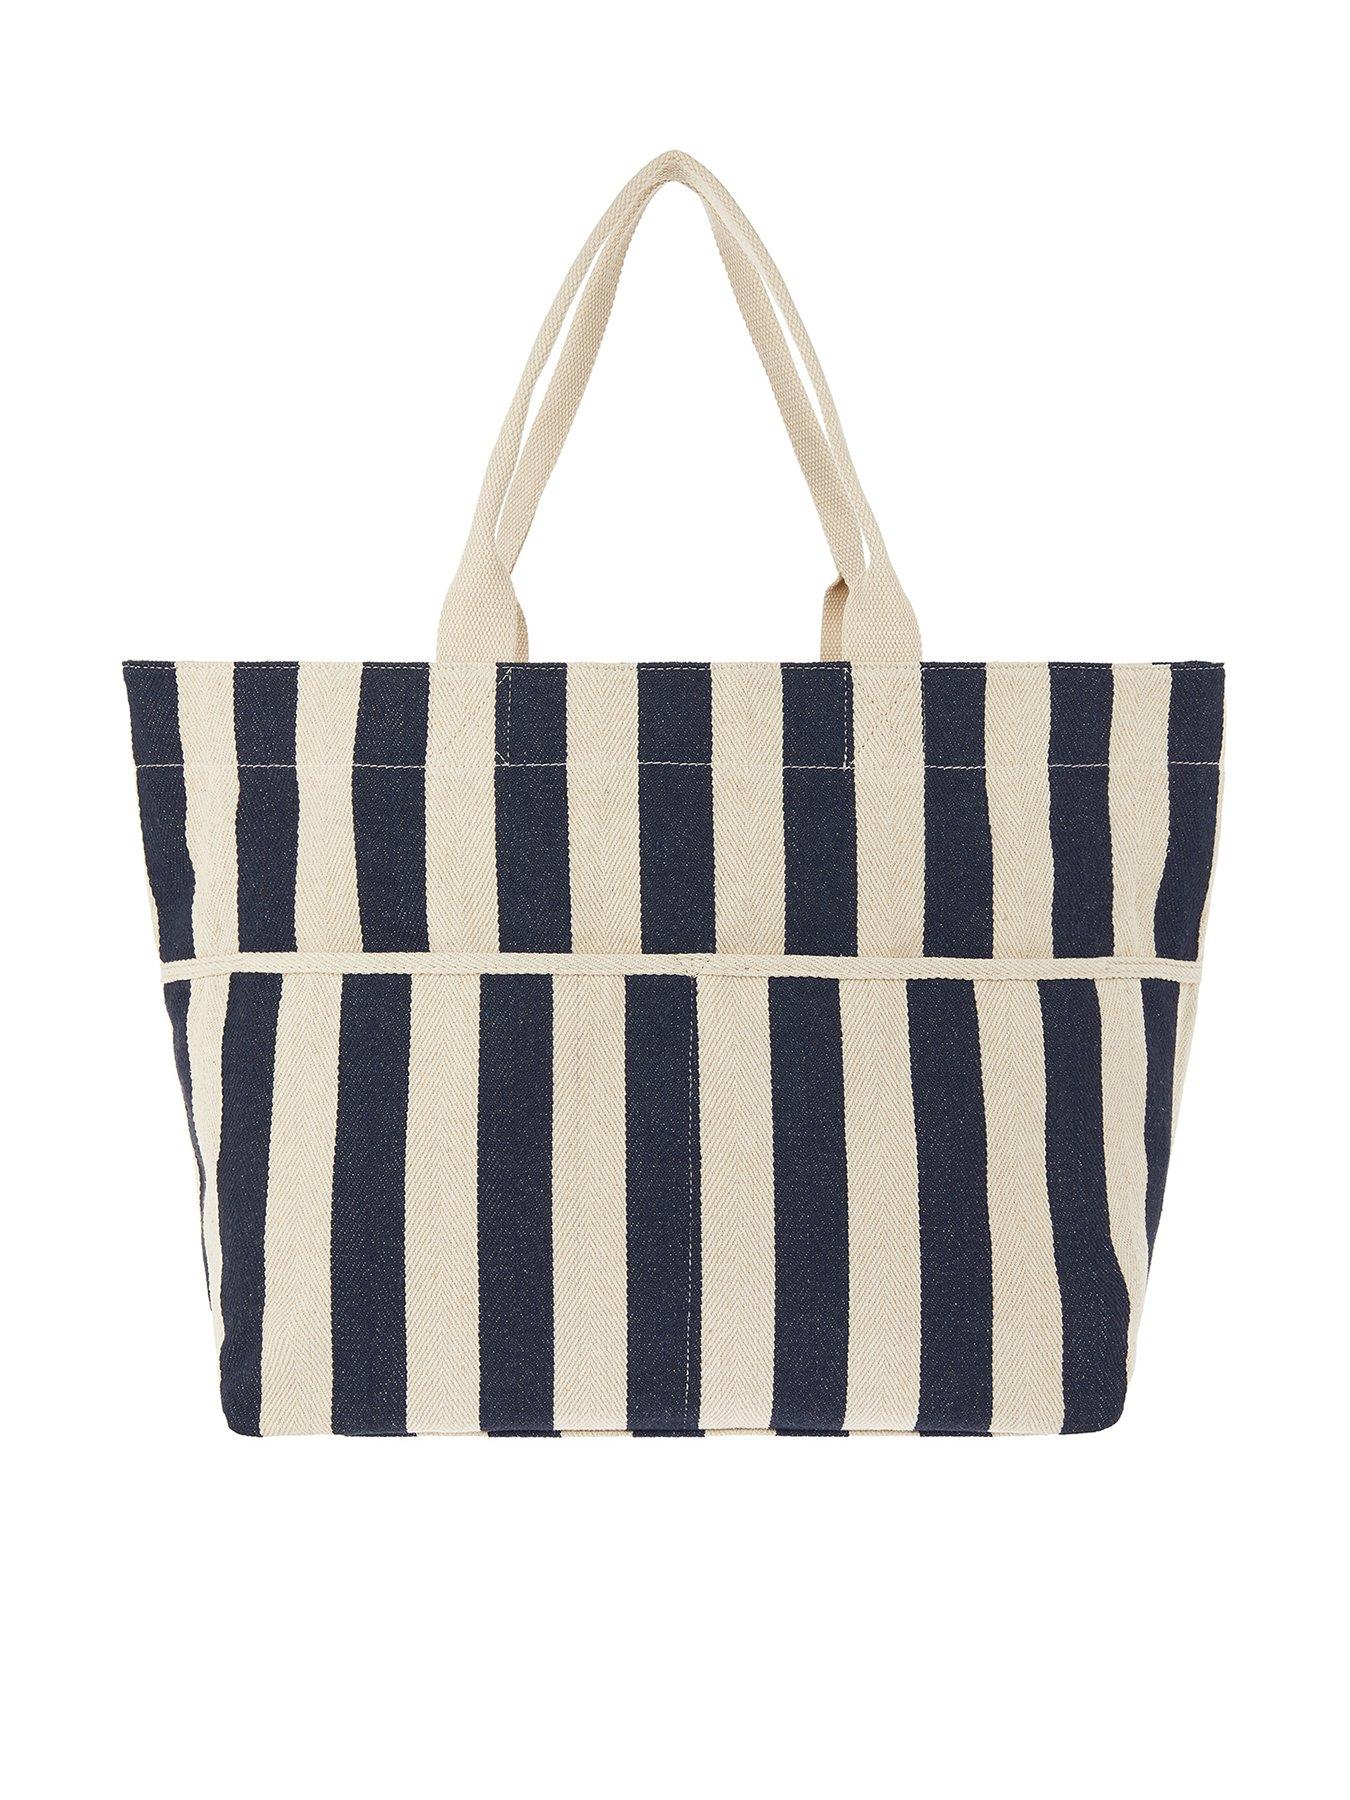 Accessorize + Woven Stripe Tote Bag – Navy